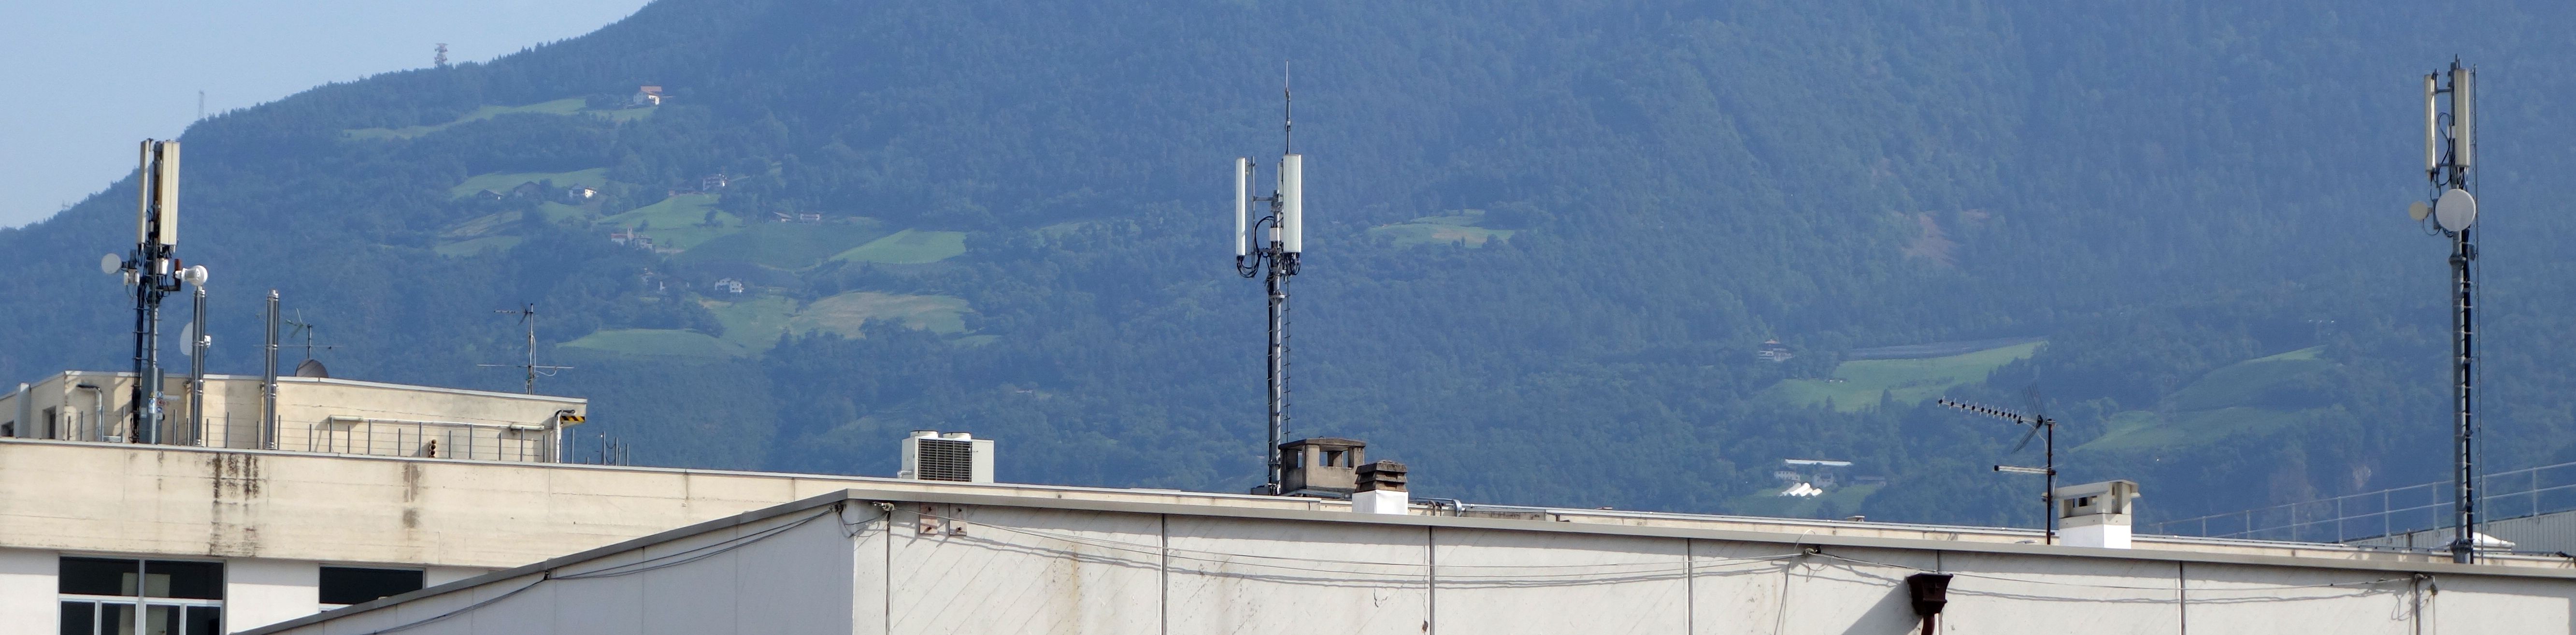 Die Antennen im August 2019. Links Vodafone, Mitte Tim und rechts ex H3G (momentan außer Betrieb)